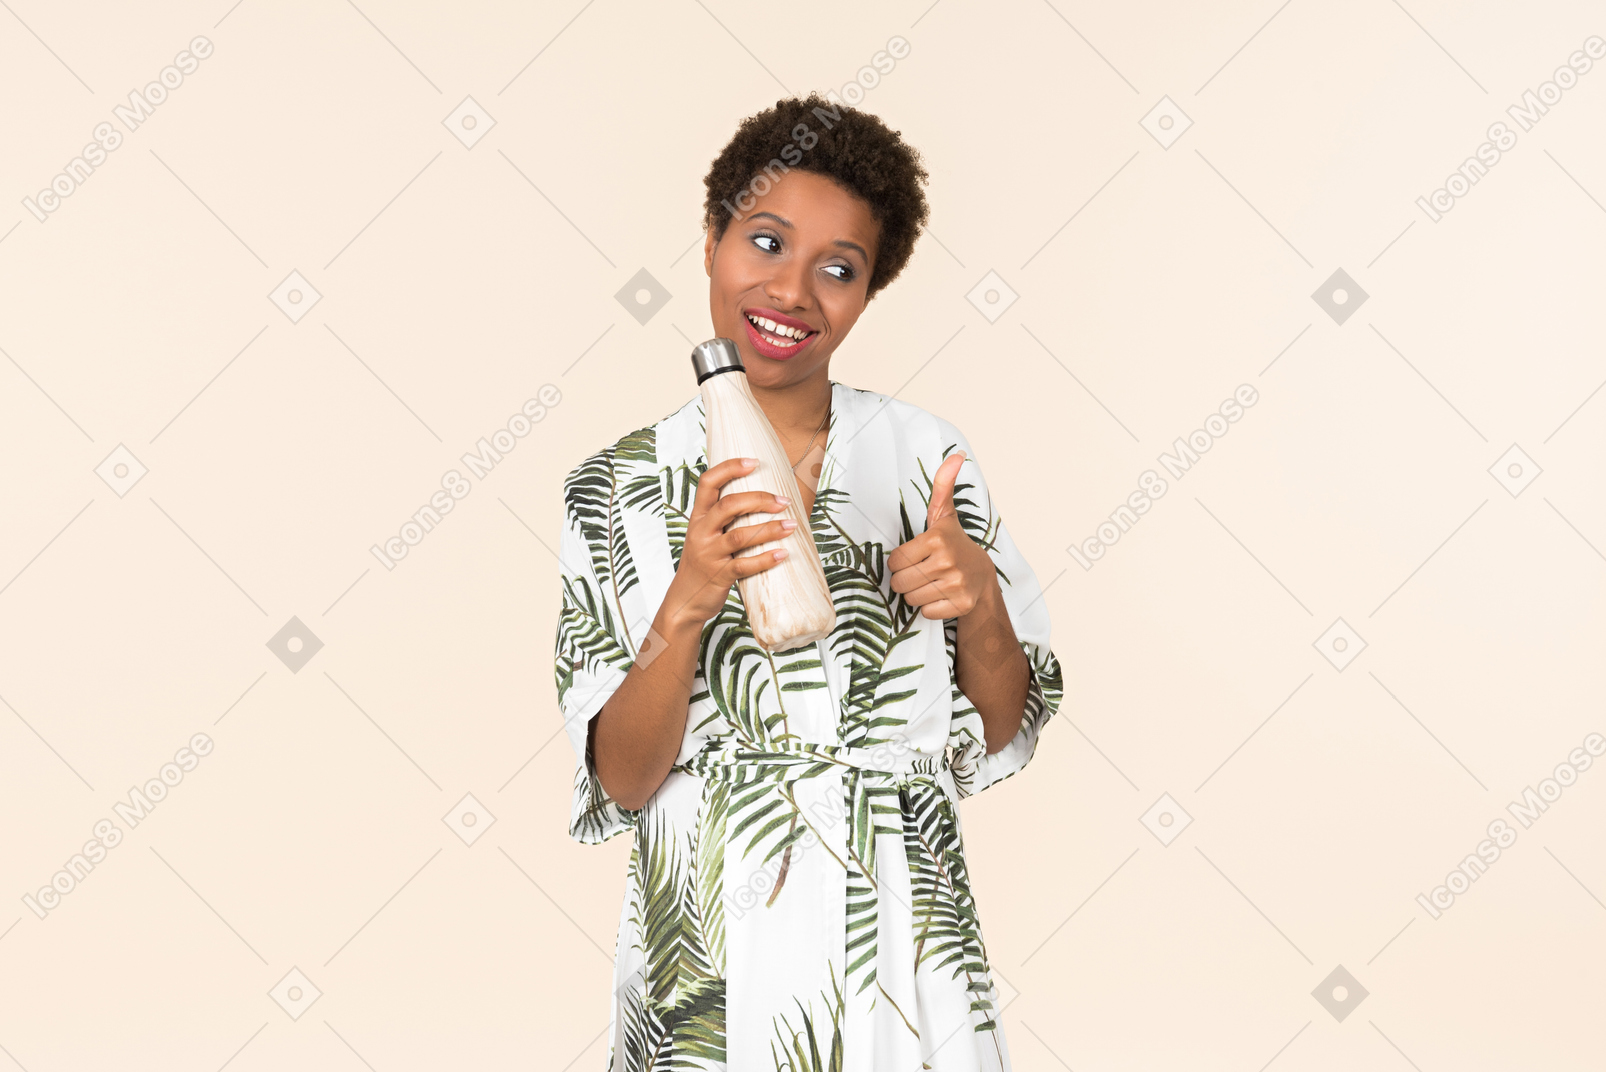 Молодая черная короткошерстная женщина в халате, держа бутылку многоразового использования и показывает палец вверх